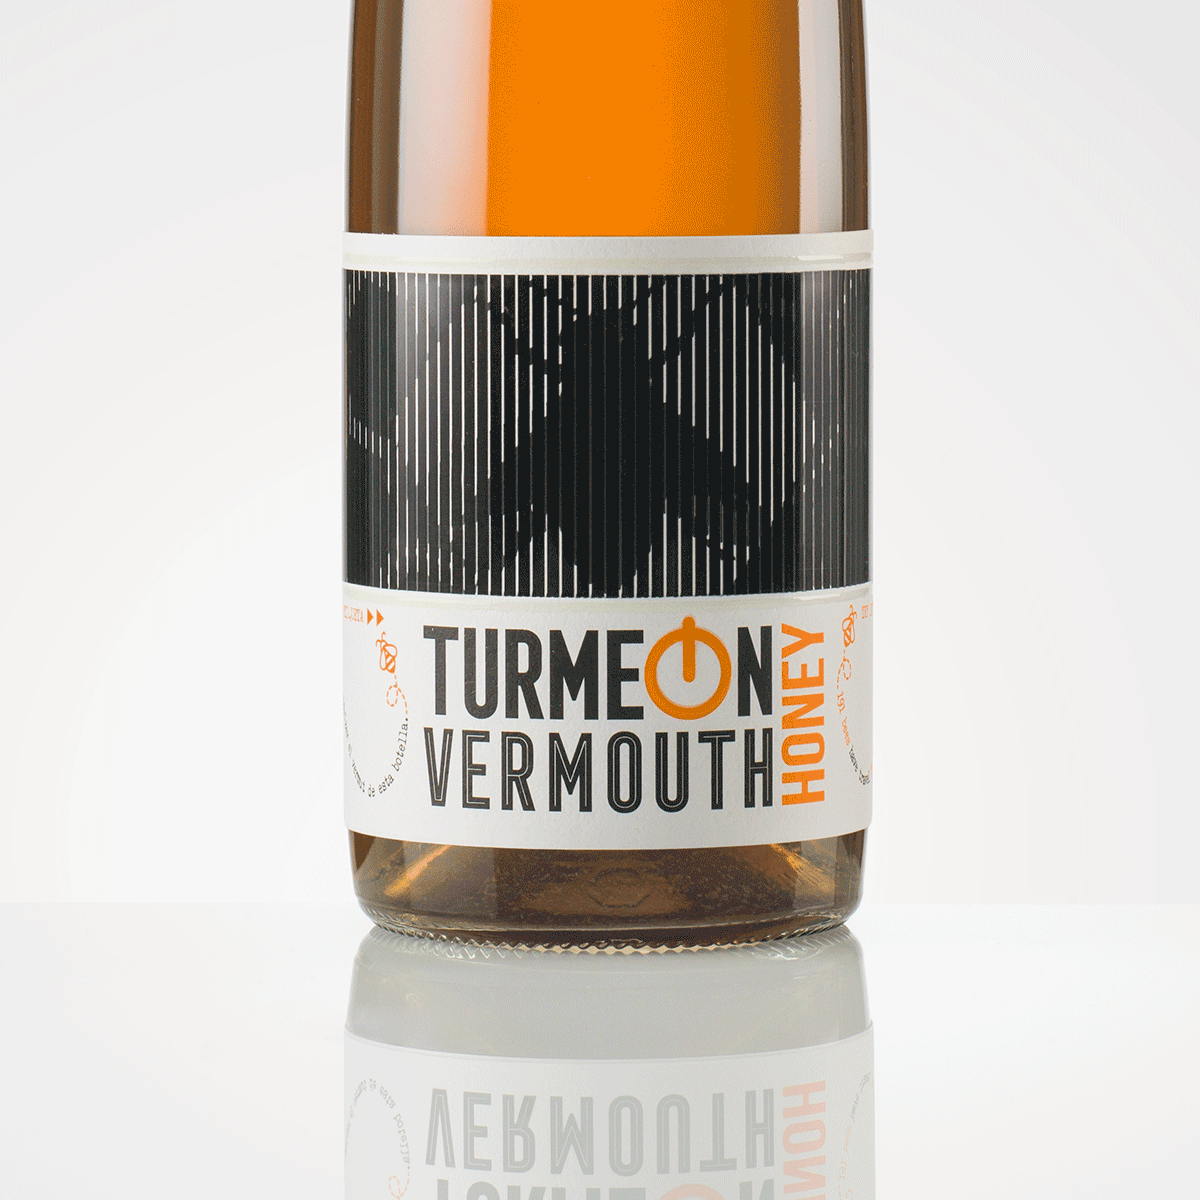 Nueva imagen y sabor para TURMEON, el primer vermut con etiqueta en movimiento del mundo